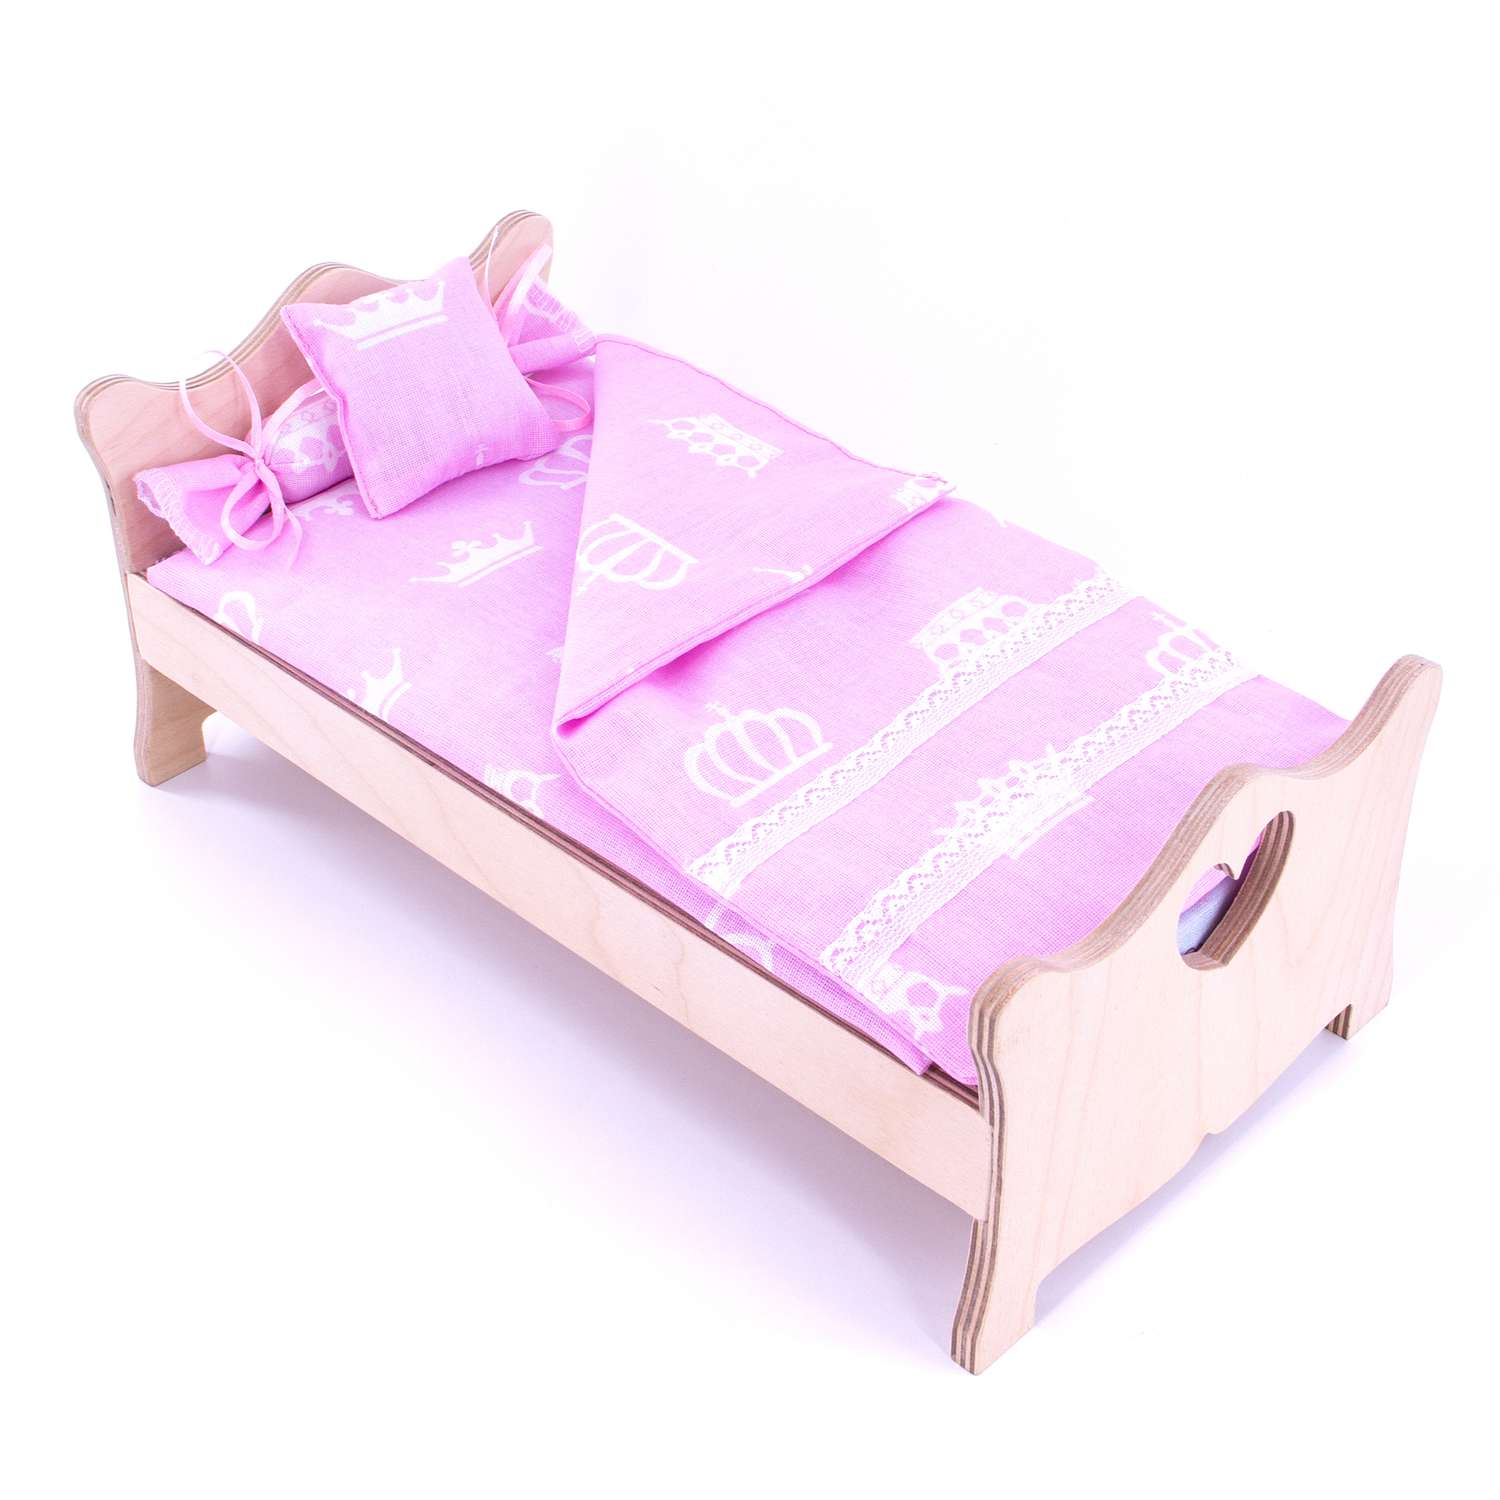 Комлпект постельного белья Модница для куклы 29 см 2002 розовый 2002розовый - фото 8